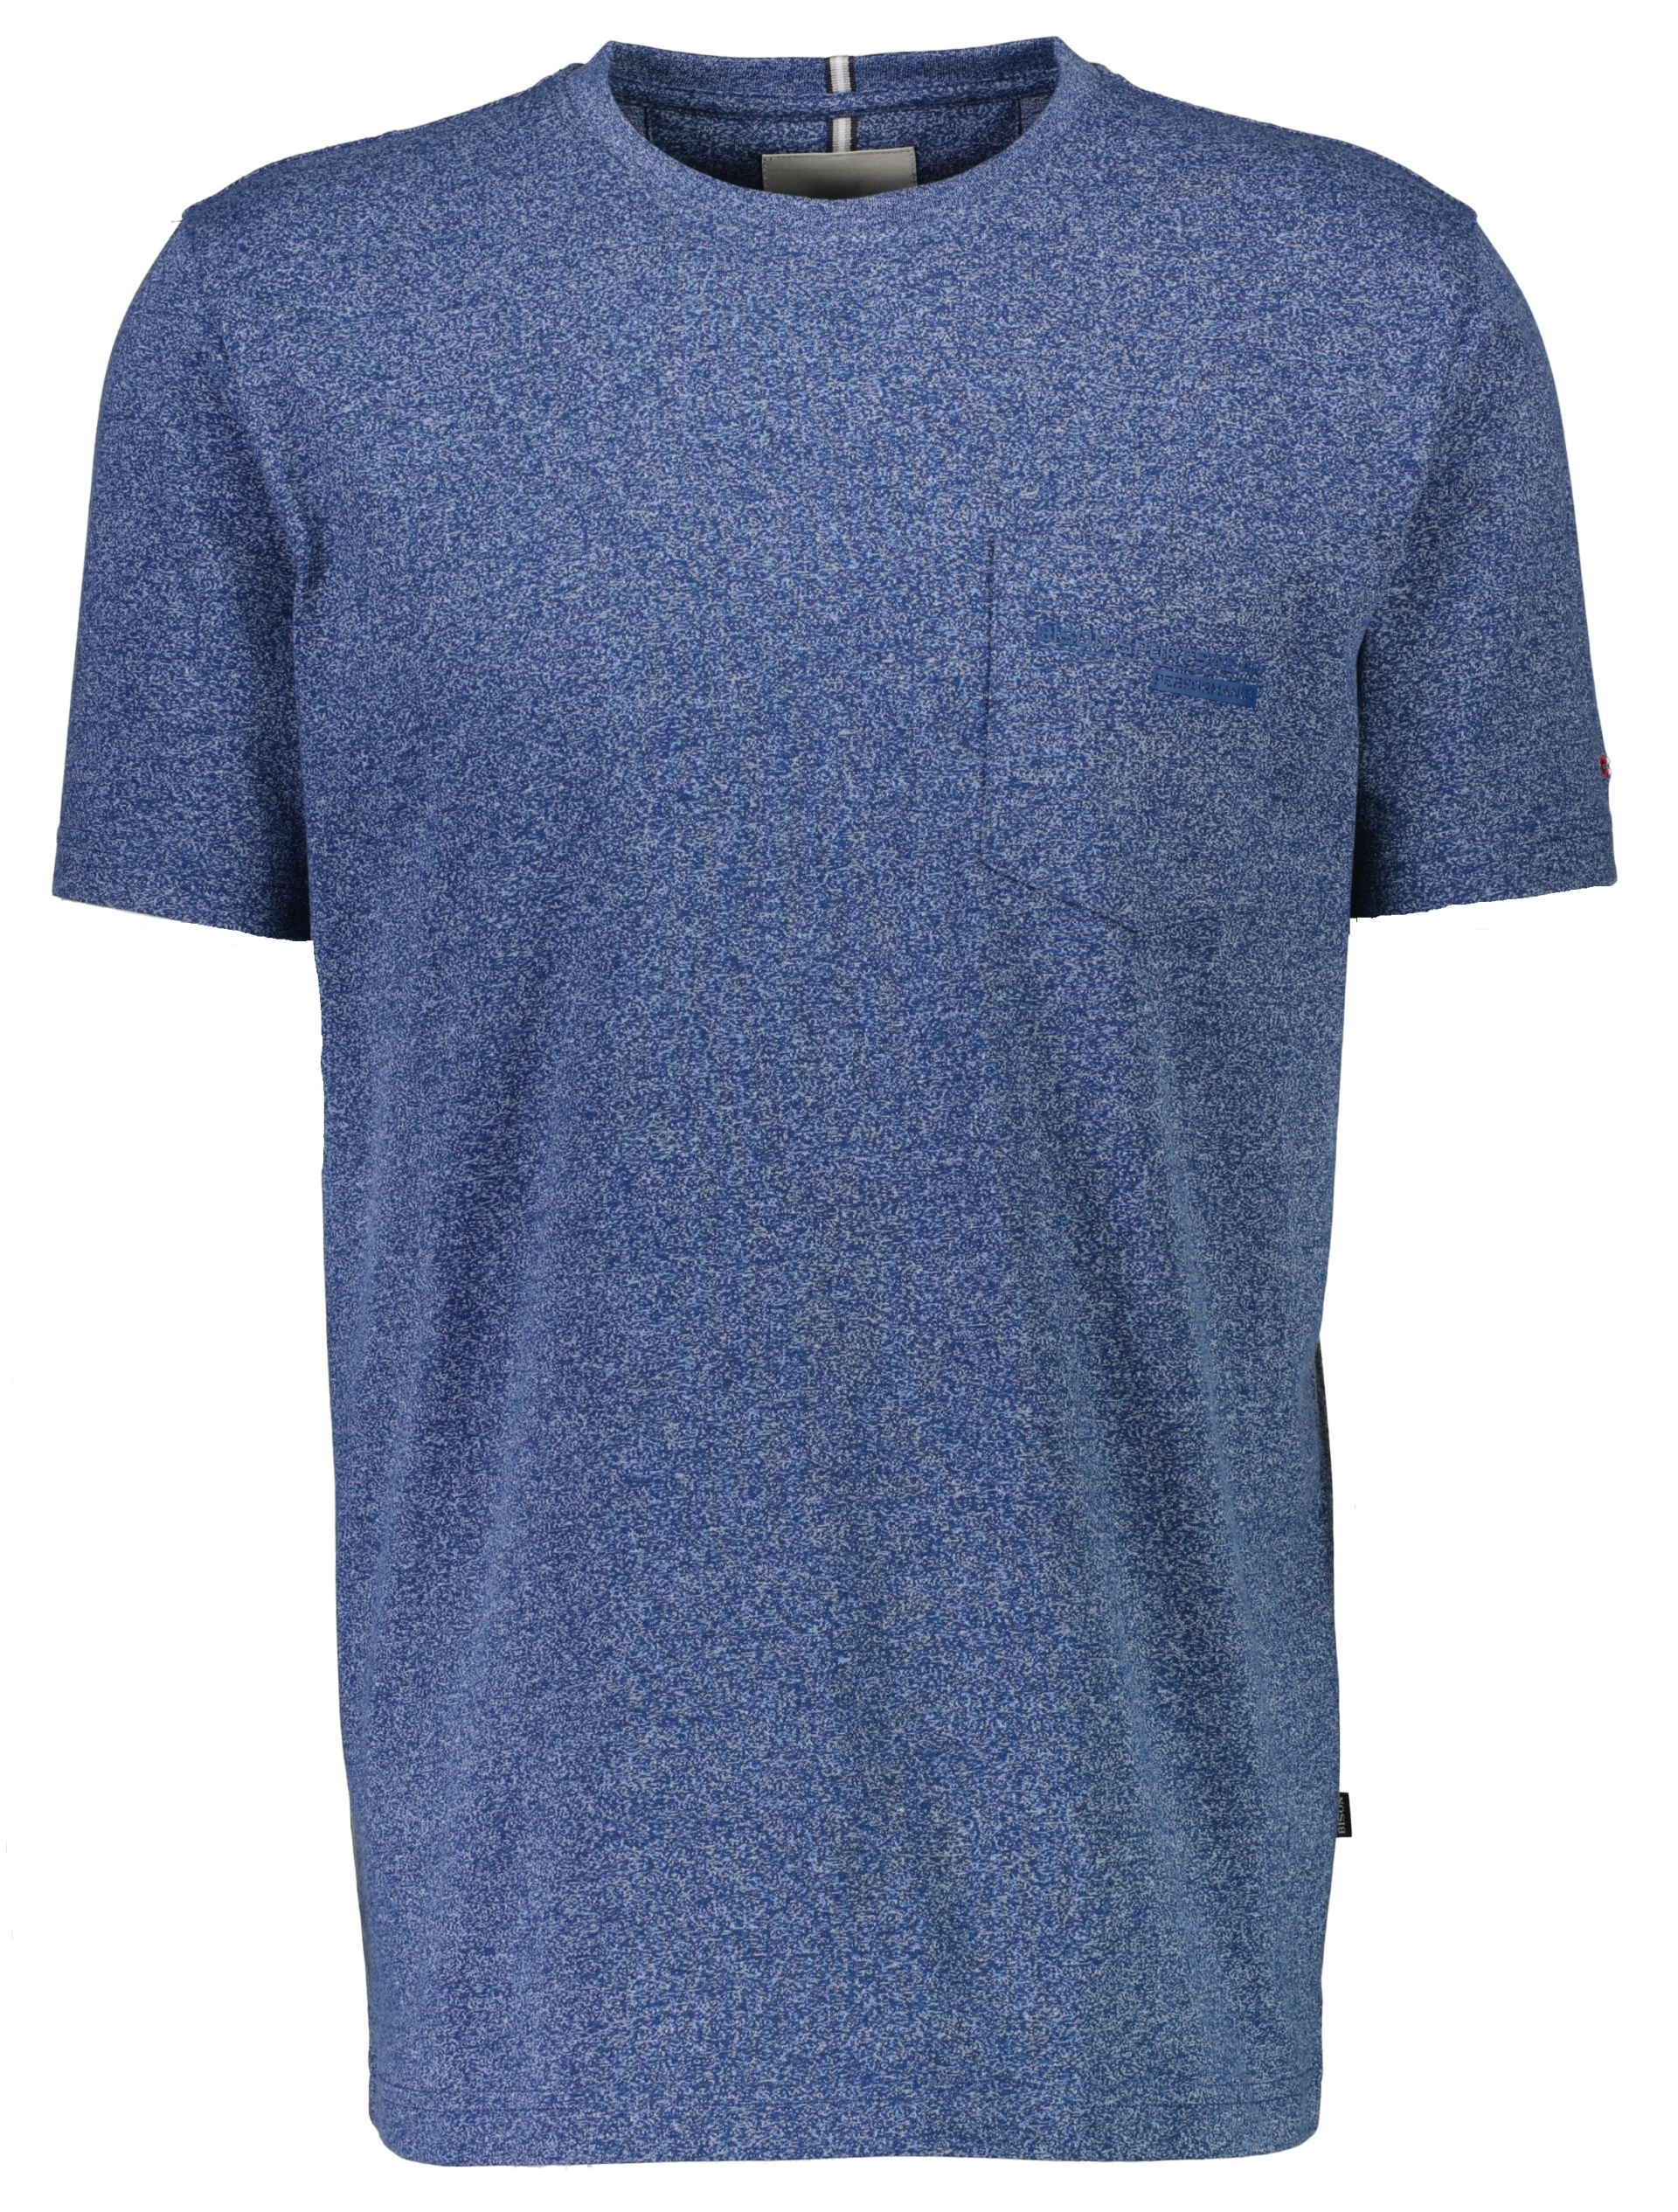 Bison T-shirt blå / dk blue